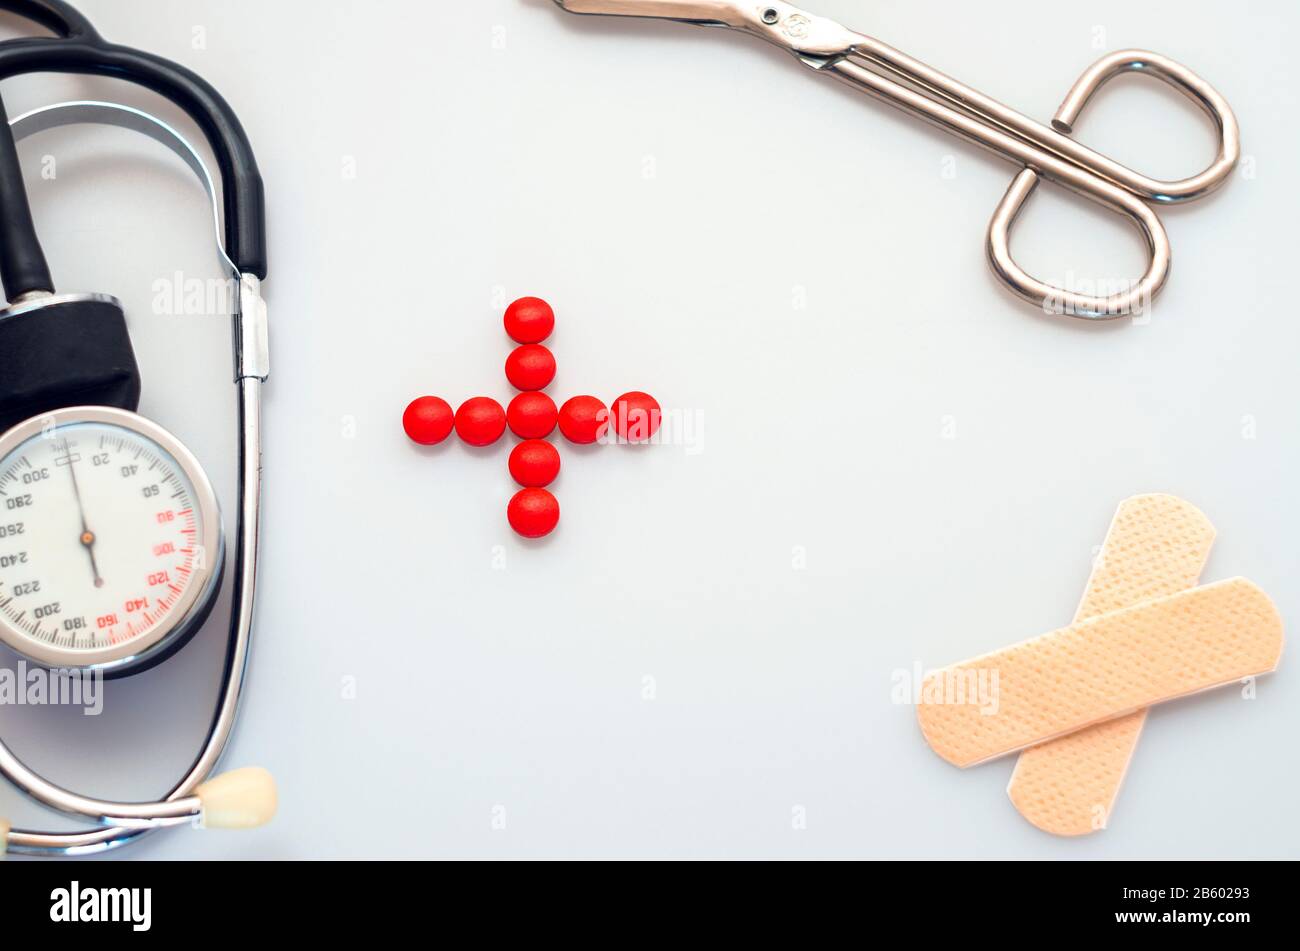 strumento medico isolatad su sfondo bianco, stetoscopio, forbici, cerotto, segno di salute fatto da pillole rosse Foto Stock